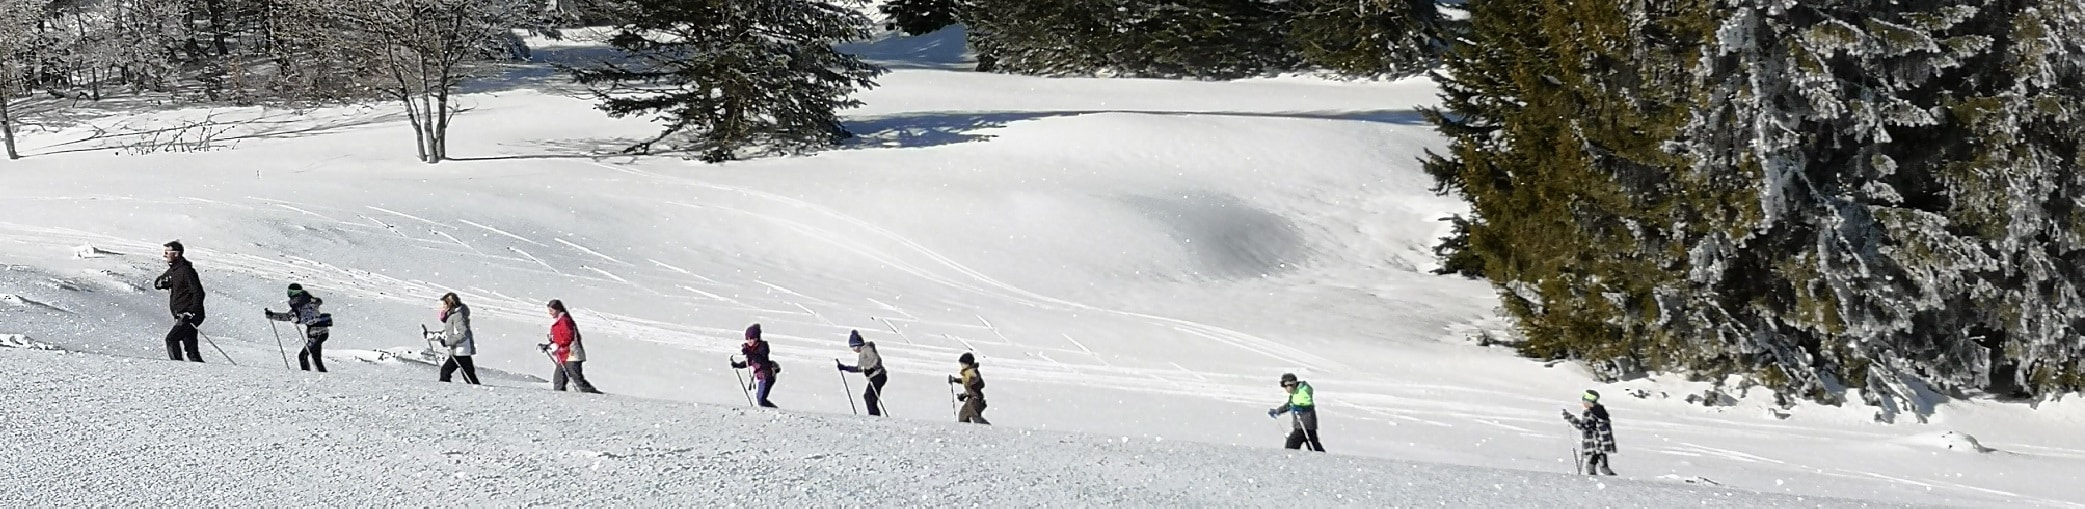 ski-de-fond-hors-pistes-neige